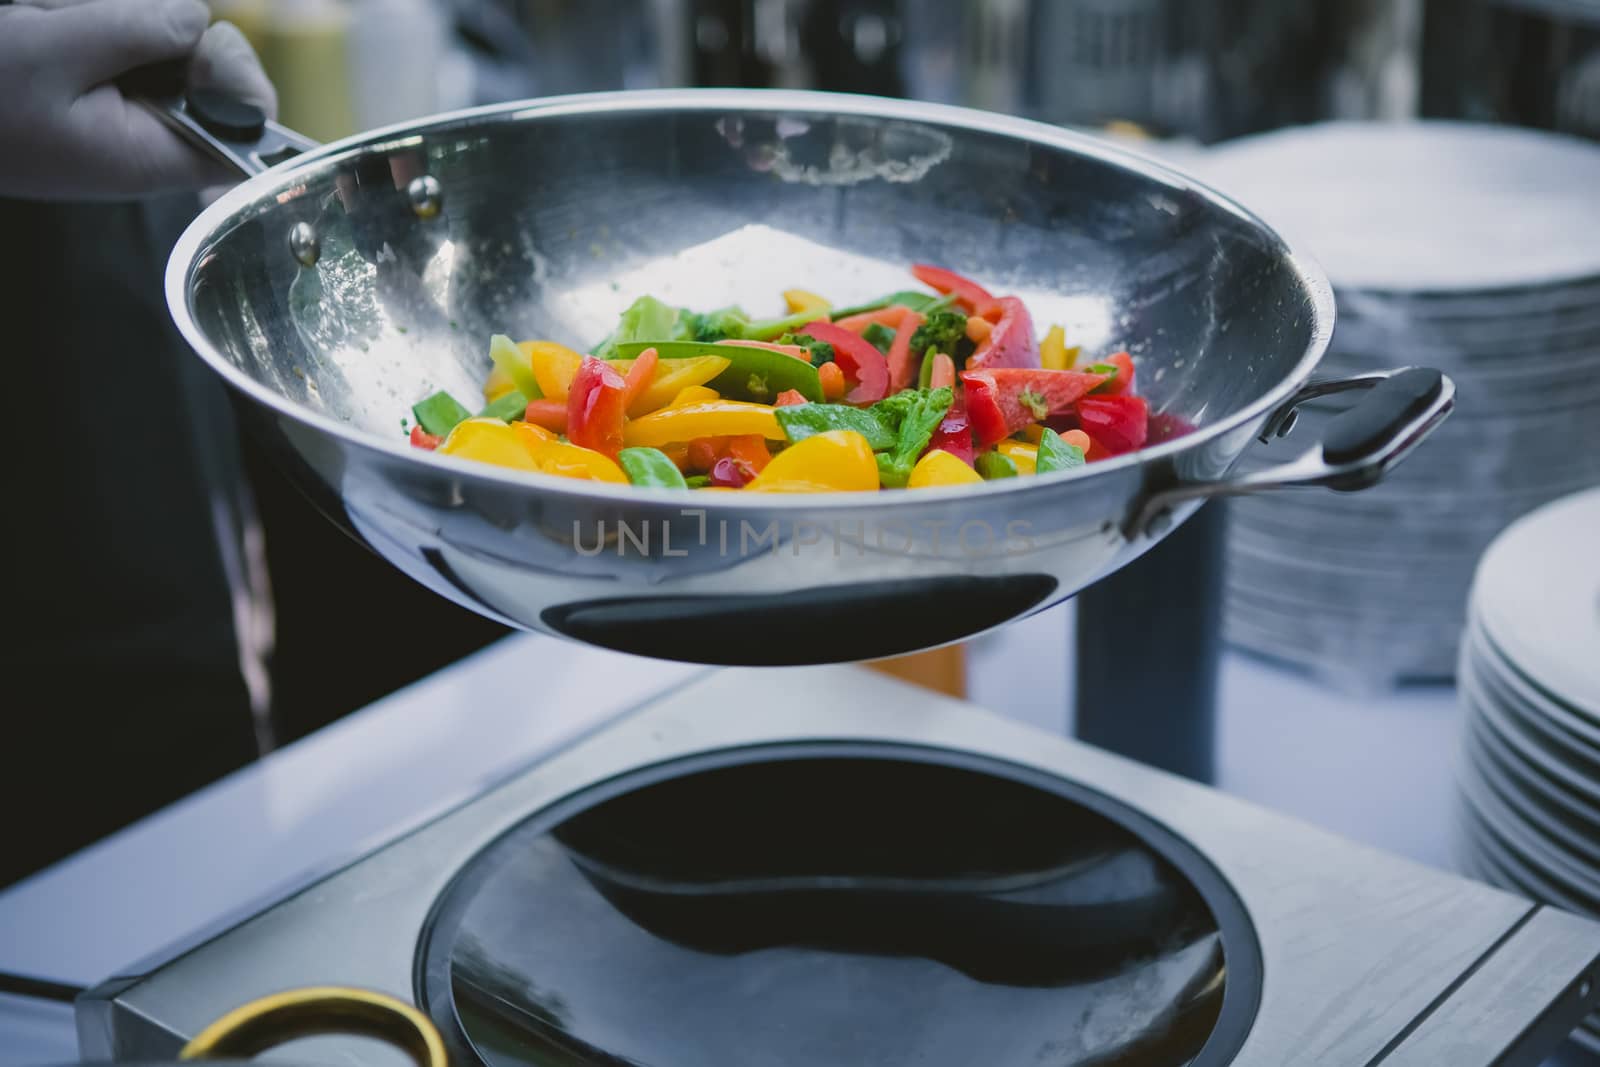 cooking vegetables in wok pan by sarymsakov